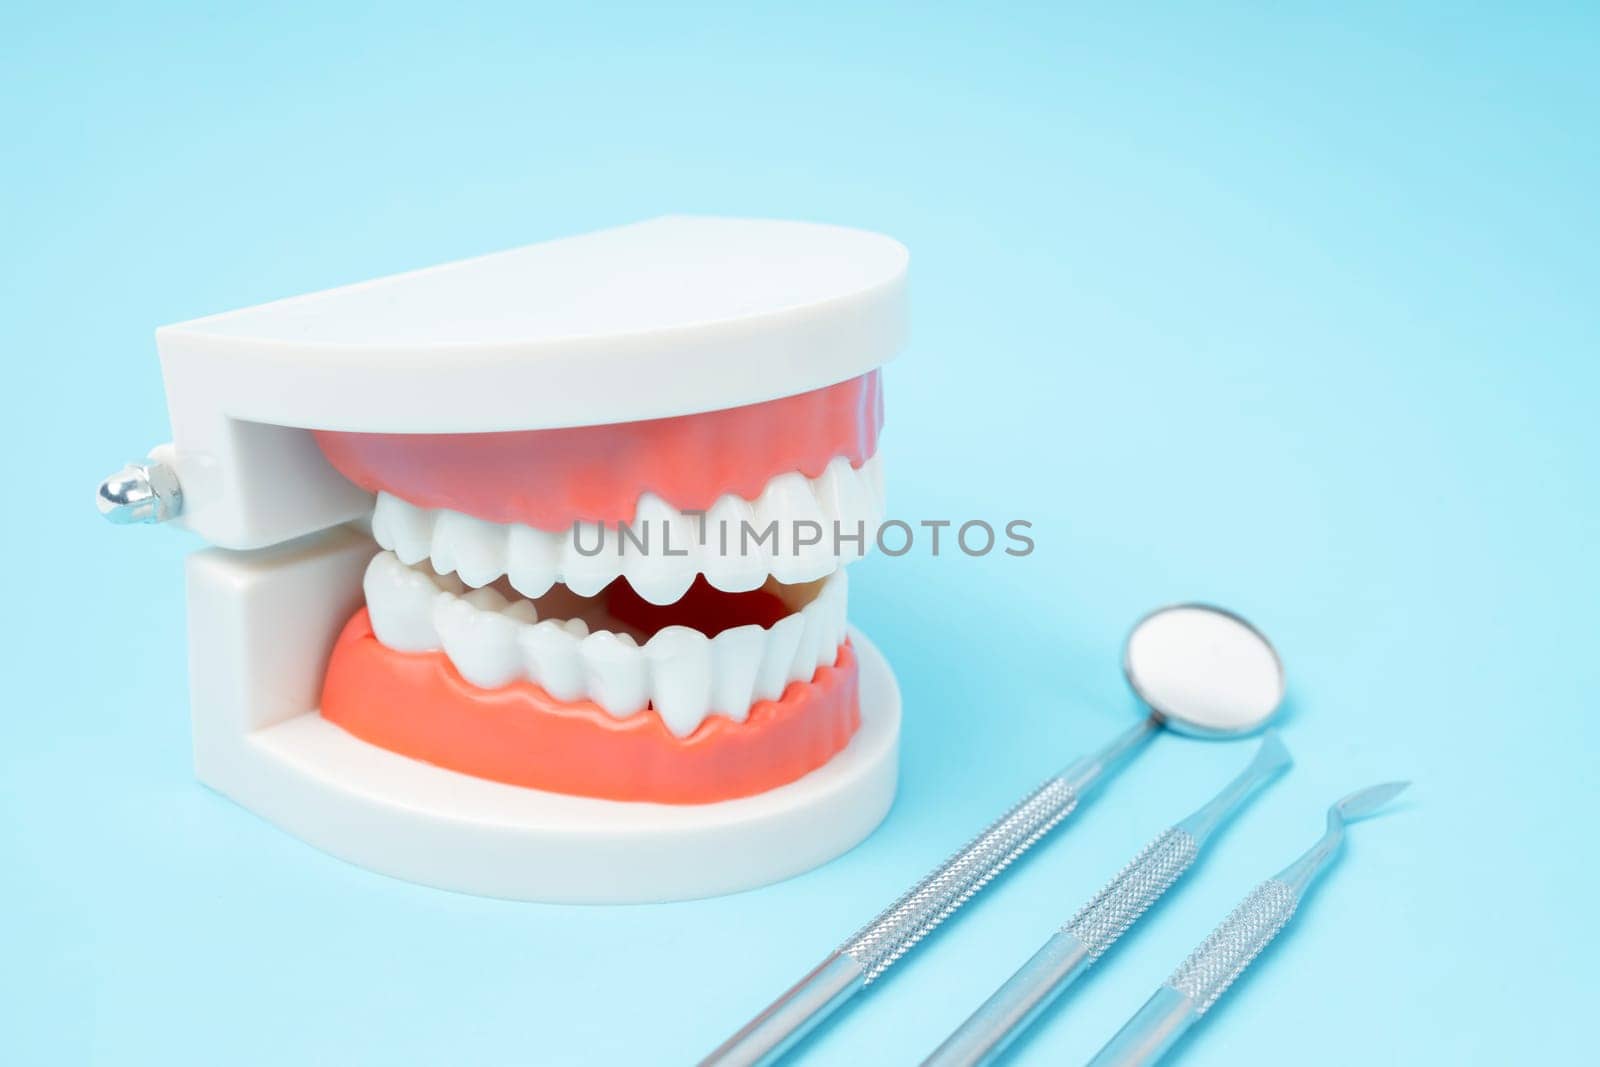 Dentures model and instrument dental on blue background.